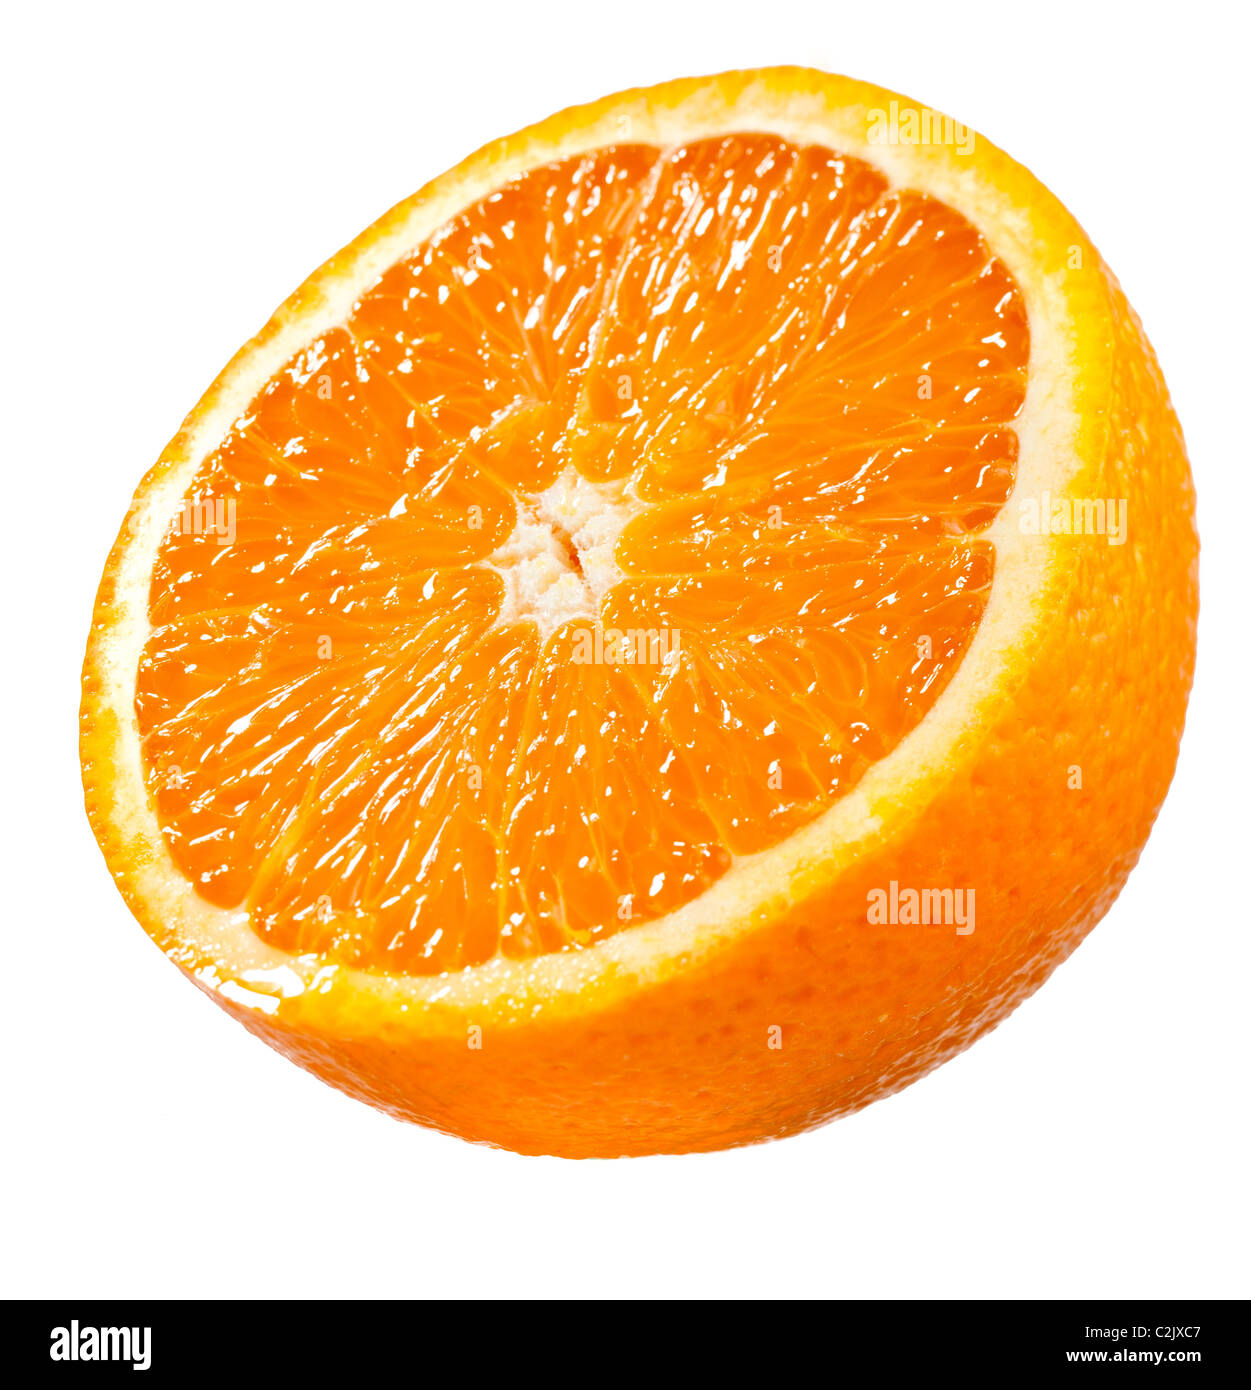 La moitié de la partie orange juteuse isolated on white Banque D'Images